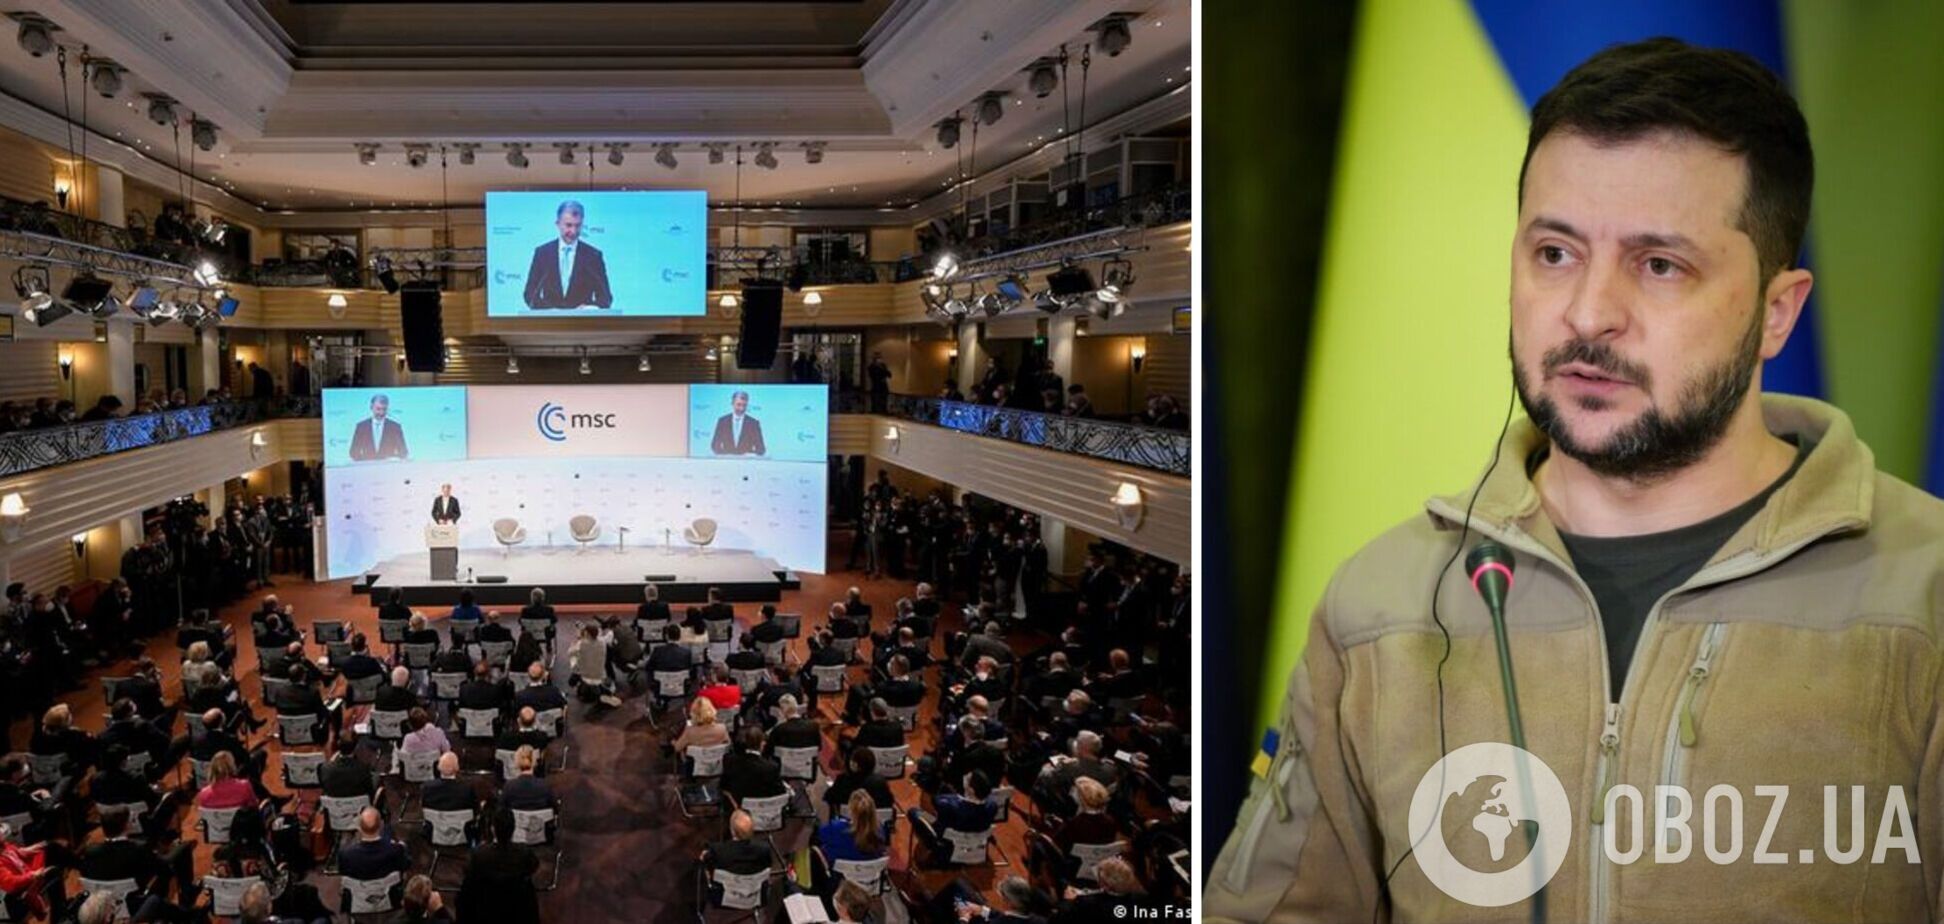 'Українській перемозі немає альтернативи': Зеленський на Мюнхенській конференції порівняв Україну з Давидом і закликав зупинити РФ